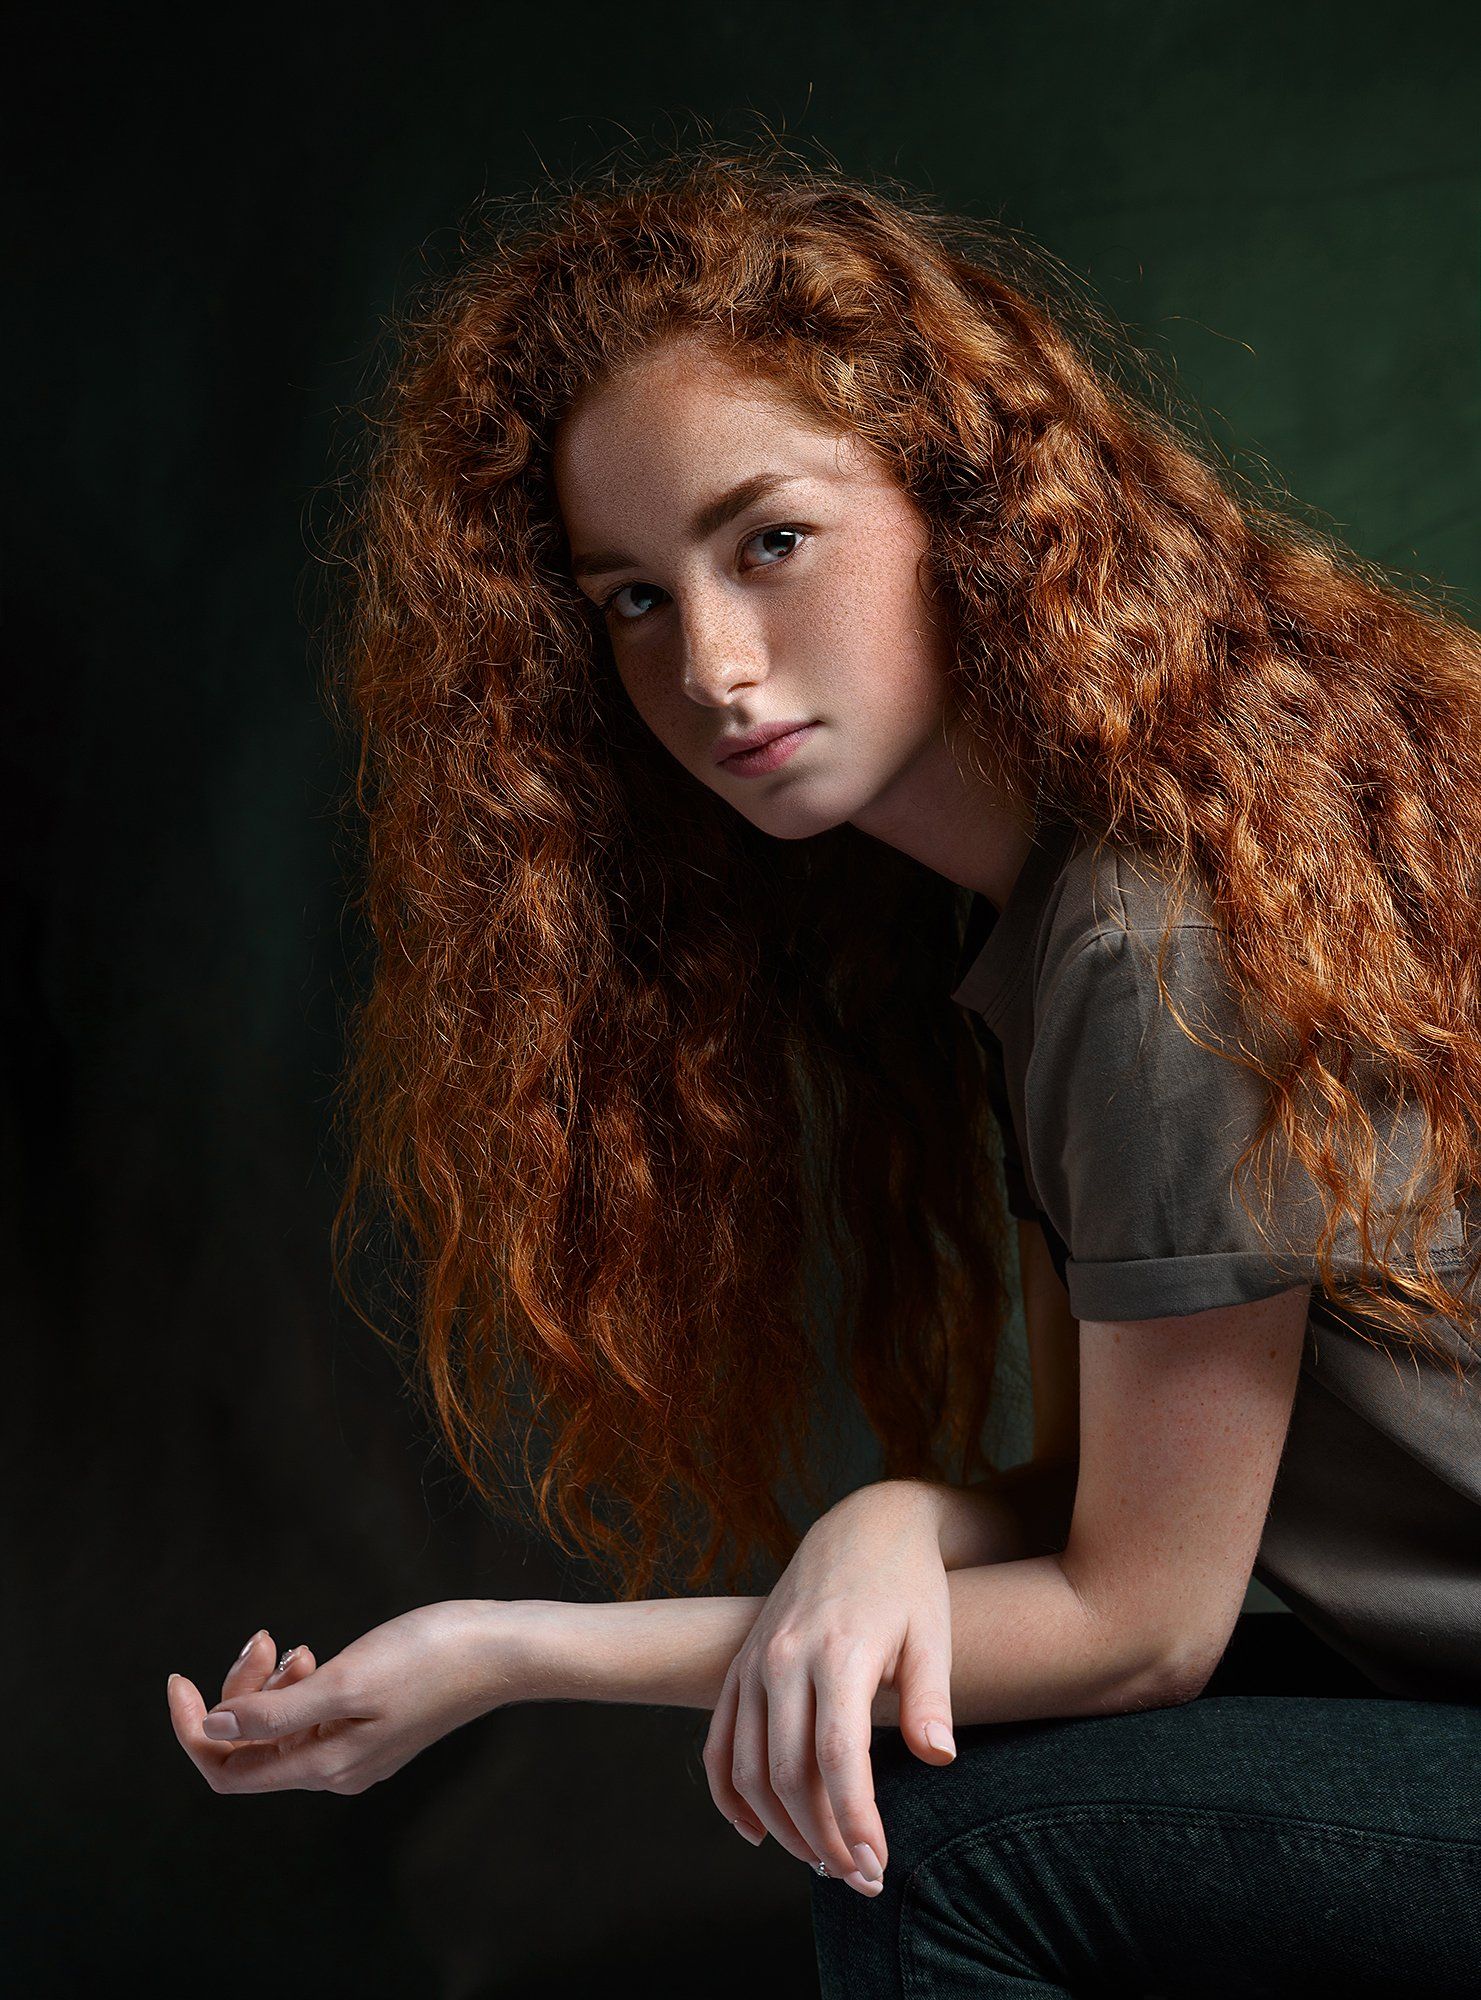 #взгляд #sight #портрет #redhead #portrait #portraitphotography #рыжая #рыжик, Борис Тменов